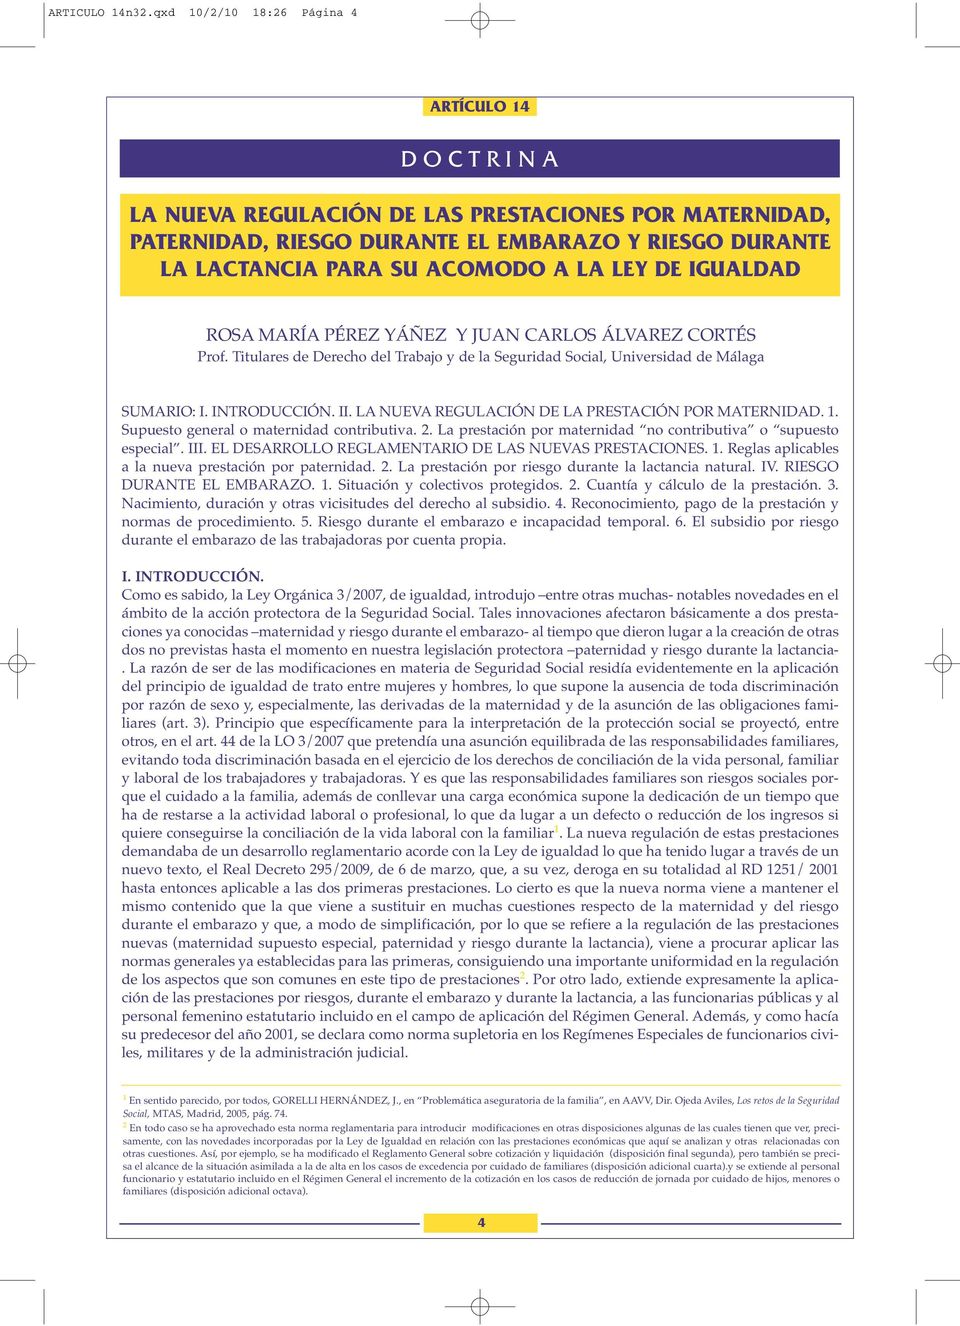 PÉREZ YÁÑEZ Y JUAN CARLOS ÁLVAREZ CORTÉS Prof. Titulares de Derecho del Trabajo y de la Seguridad Social, Universidad de Málaga SUMARIO: I. INTRODUCCIÓN. II.